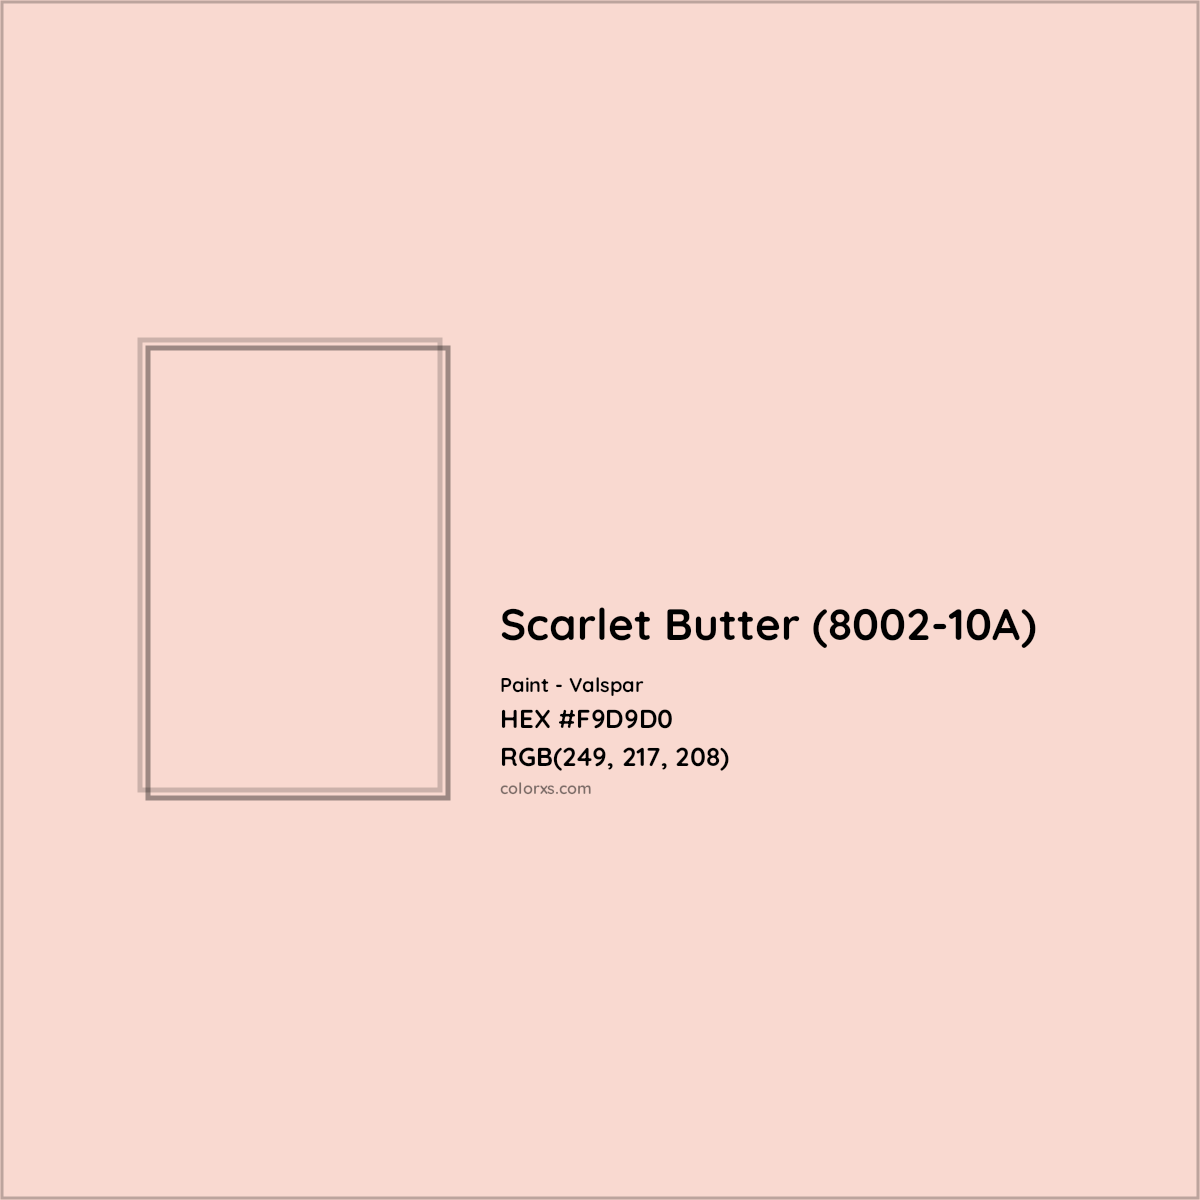 HEX #F9D9D0 Scarlet Butter (8002-10A) Paint Valspar - Color Code